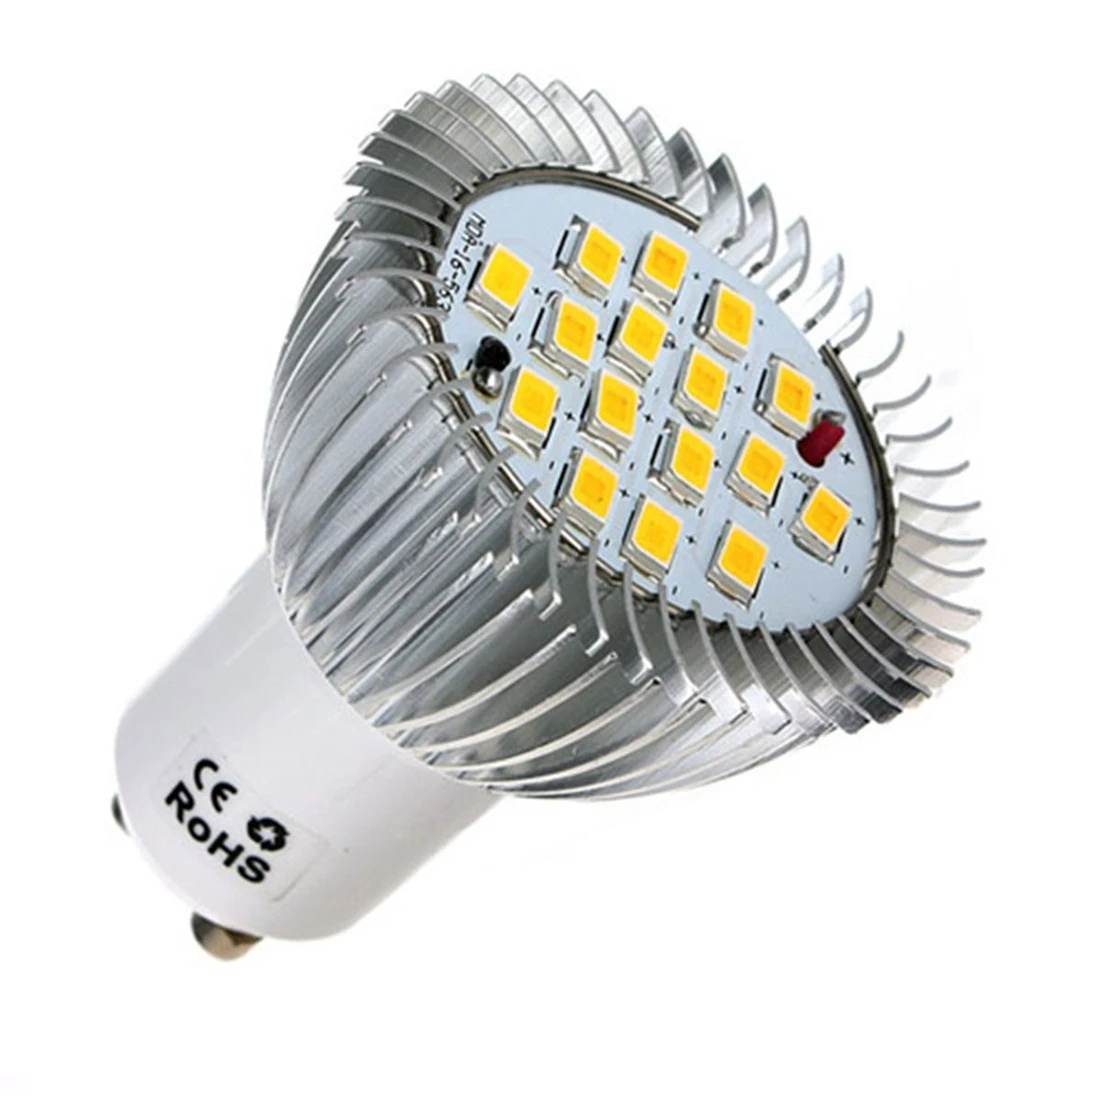 

GU10 16 LED 5630 SMD Energy Saving Lamp Bulb 7W LED Light Bulb Spotlight Spot Lights Bulbs White/Warm White Lighting AC 85-220V